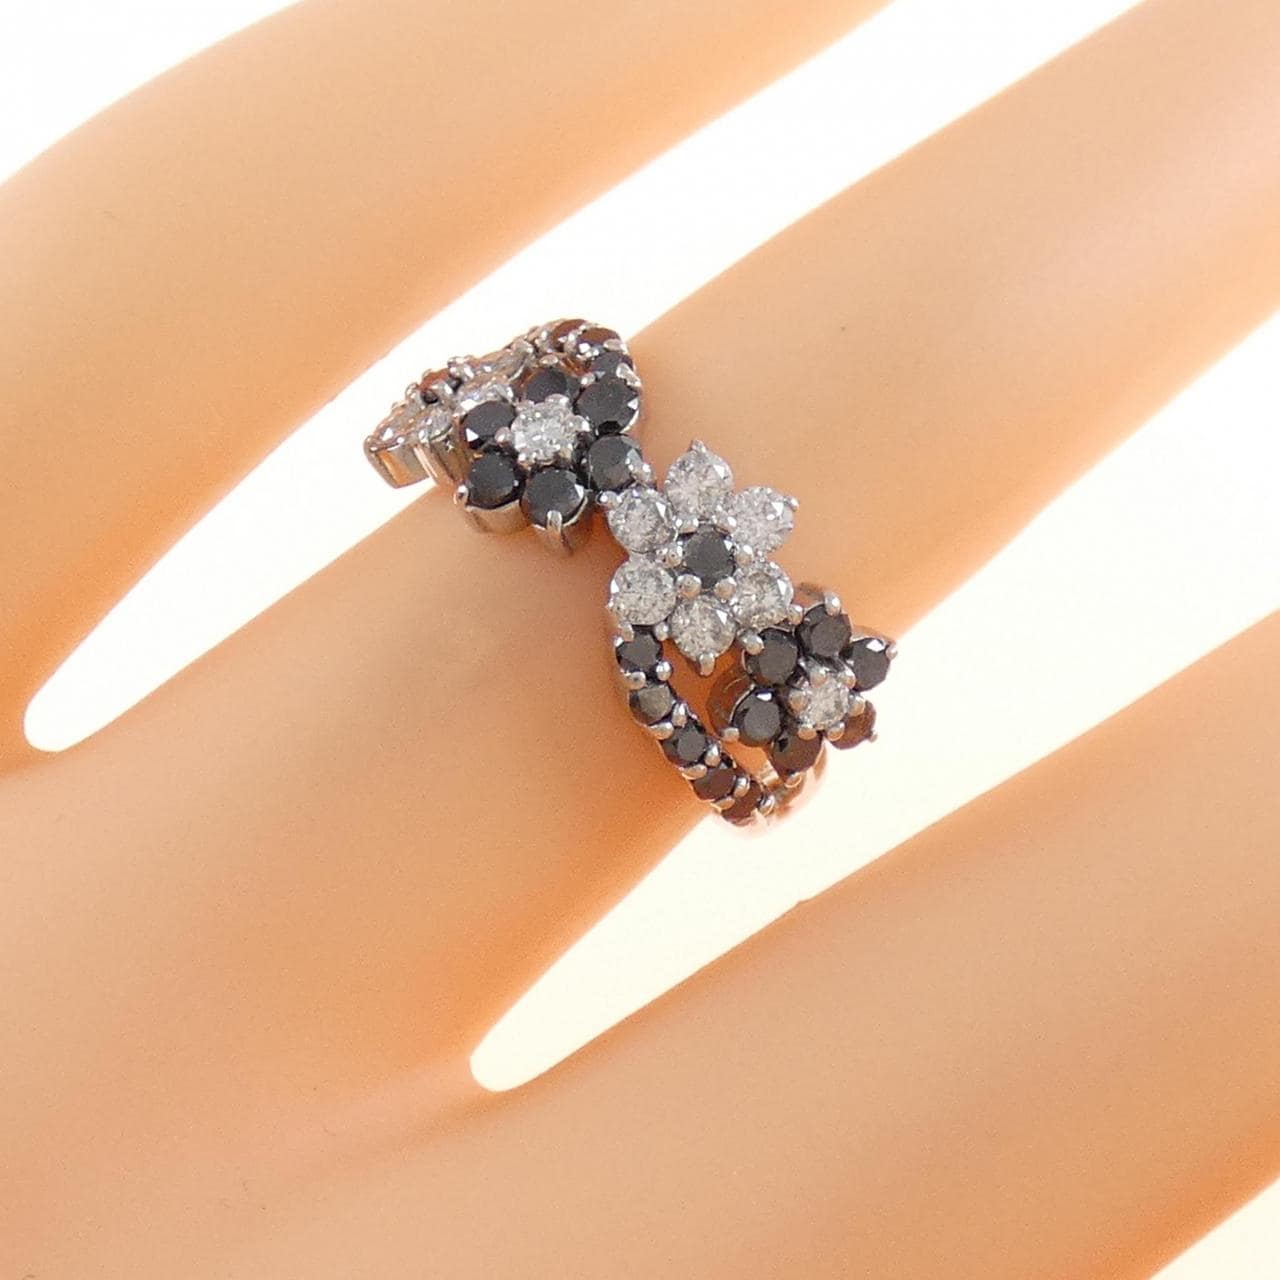 K18WG flower Diamond ring 0.60CT